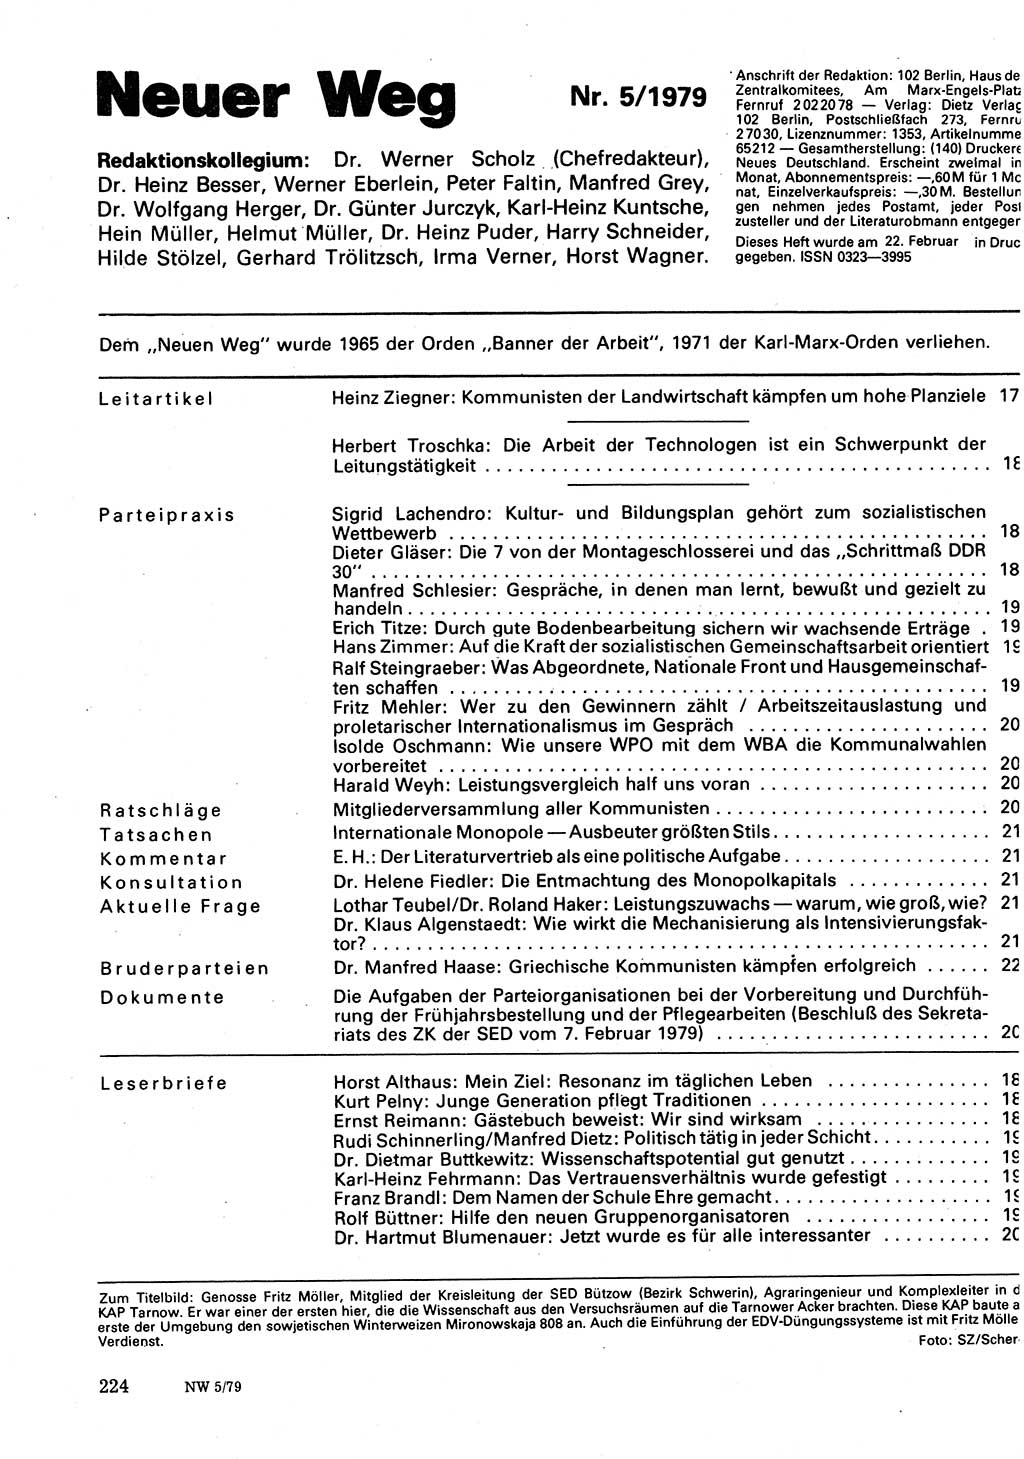 Neuer Weg (NW), Organ des Zentralkomitees (ZK) der SED (Sozialistische Einheitspartei Deutschlands) für Fragen des Parteilebens, 34. Jahrgang [Deutsche Demokratische Republik (DDR)] 1979, Seite 224 (NW ZK SED DDR 1979, S. 224)